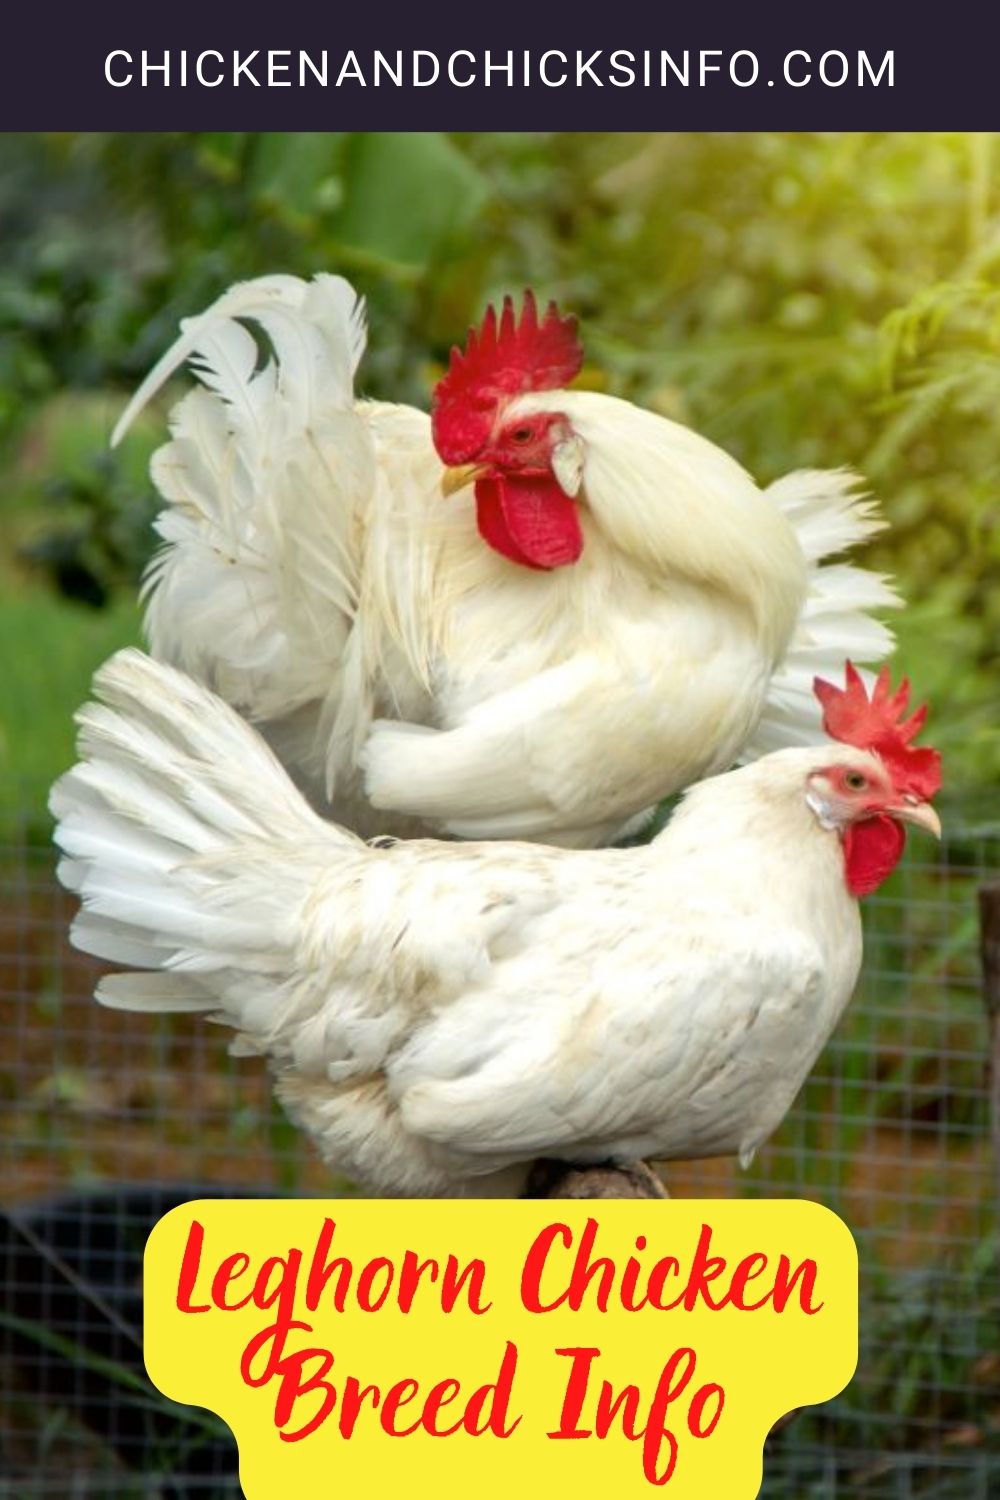 Leghorn Chicken Breed Info Pinterest image.